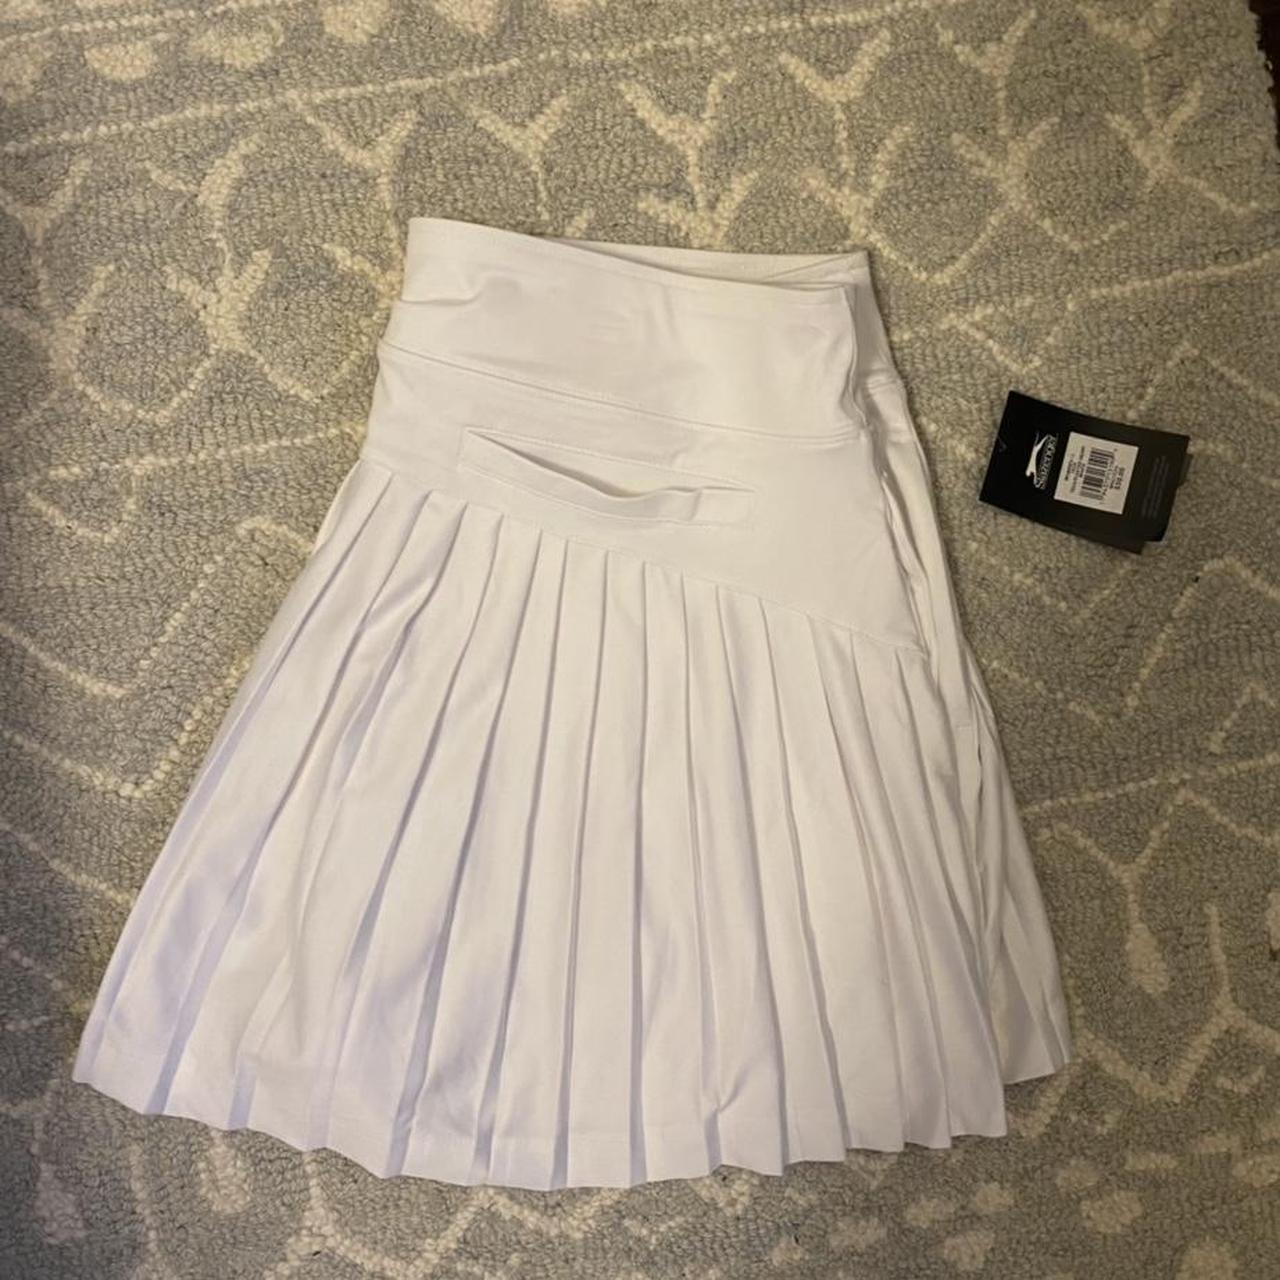 Slazenger Women's White Skirt (2)